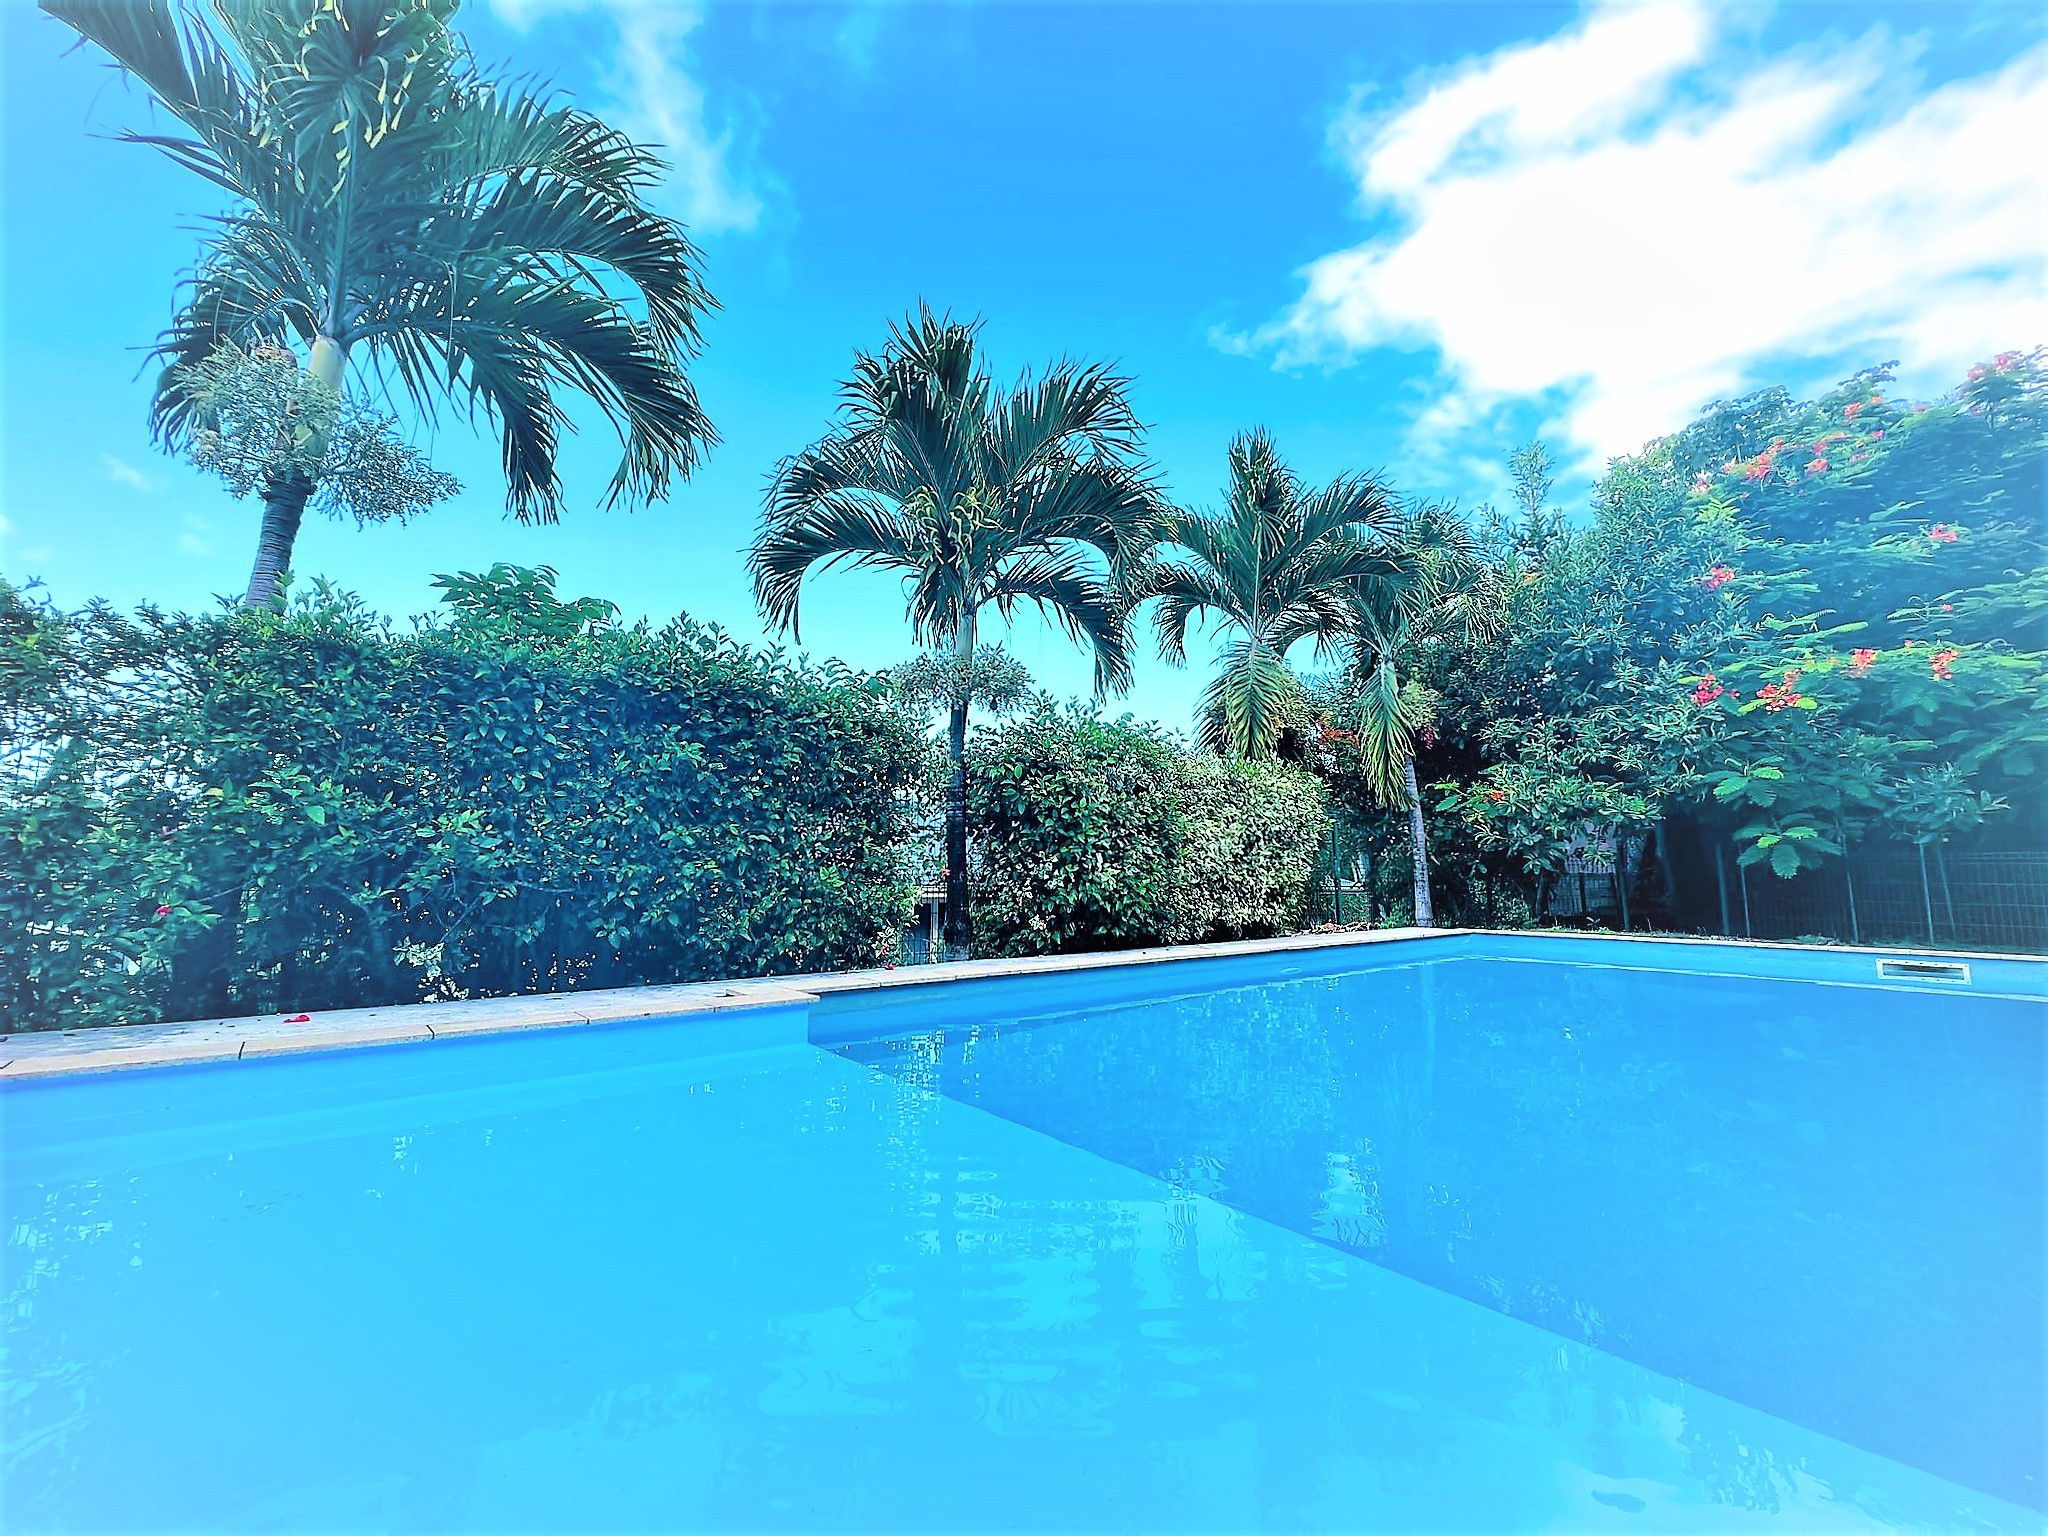 Appartement à louer à Tahiti pour vos vacances avec vue sur la mer et Moorea et accès libre à une superbe piscine